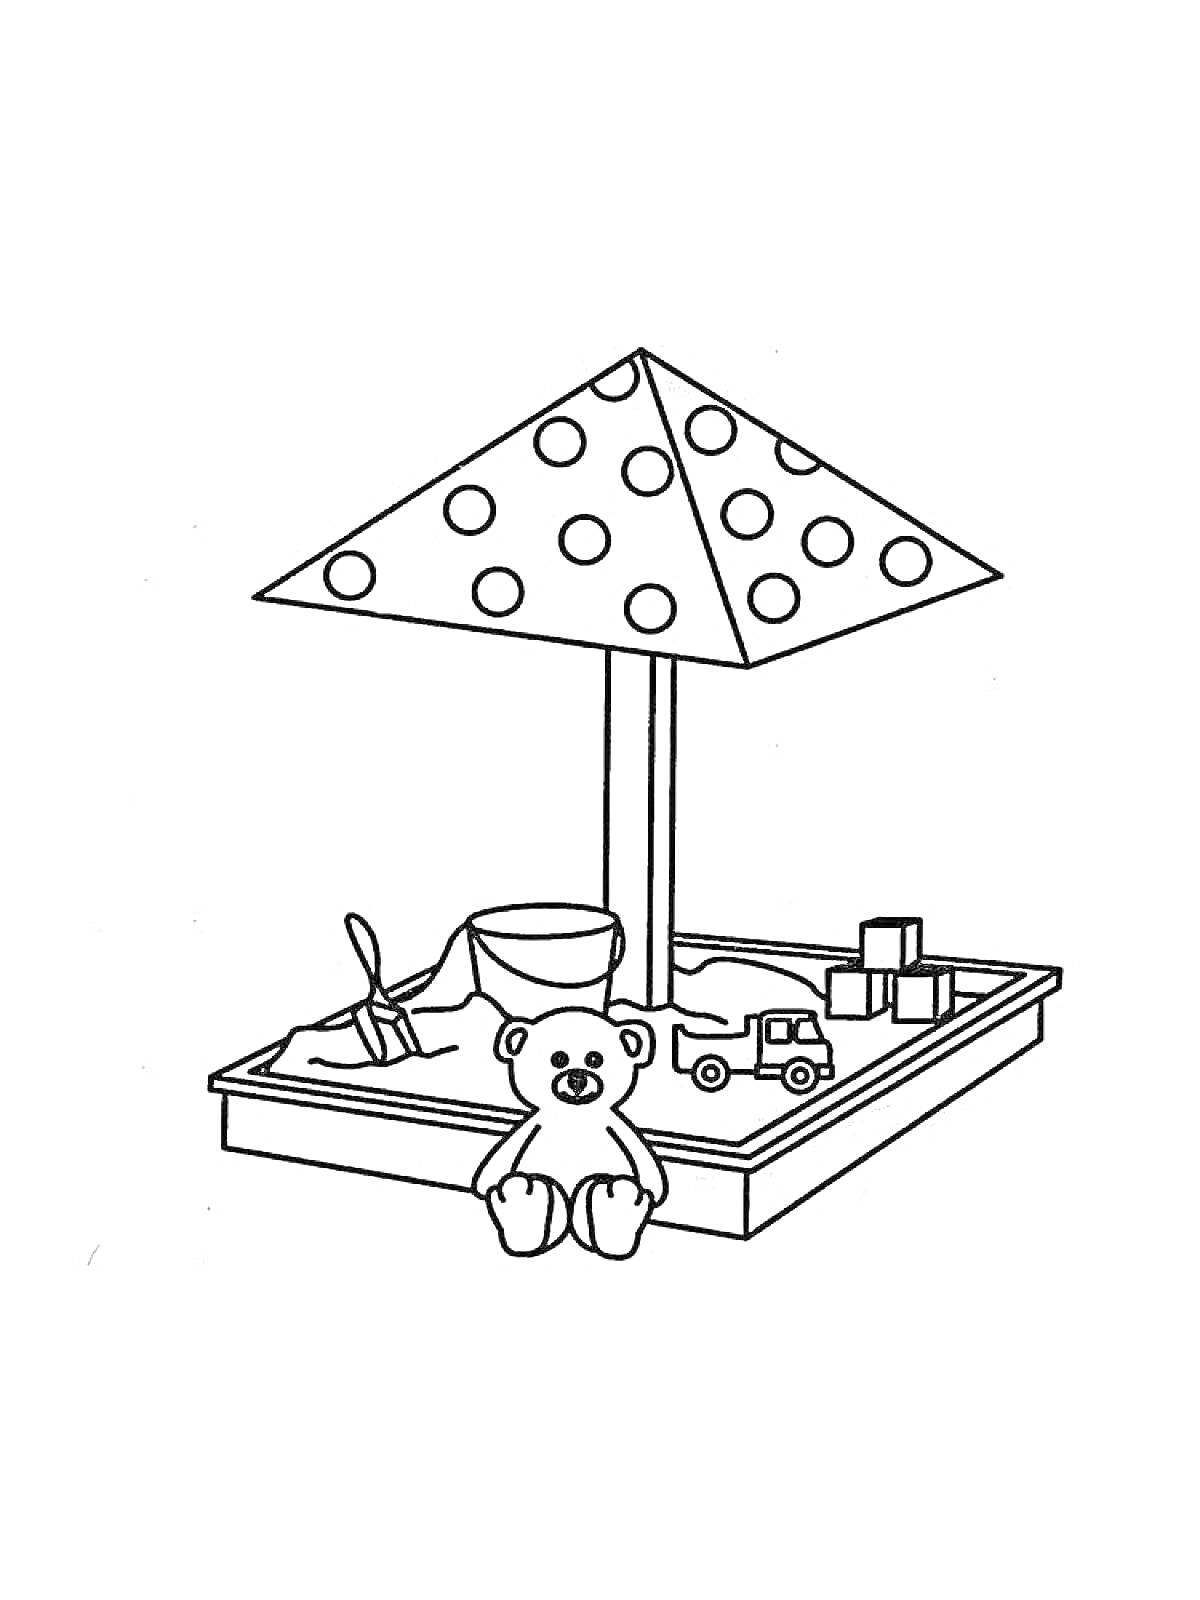 Раскраска Песочница с игрушками - ведро, лопата, кубики, игрушечный грузовик и плюшевый медведь под зонтом в горошек